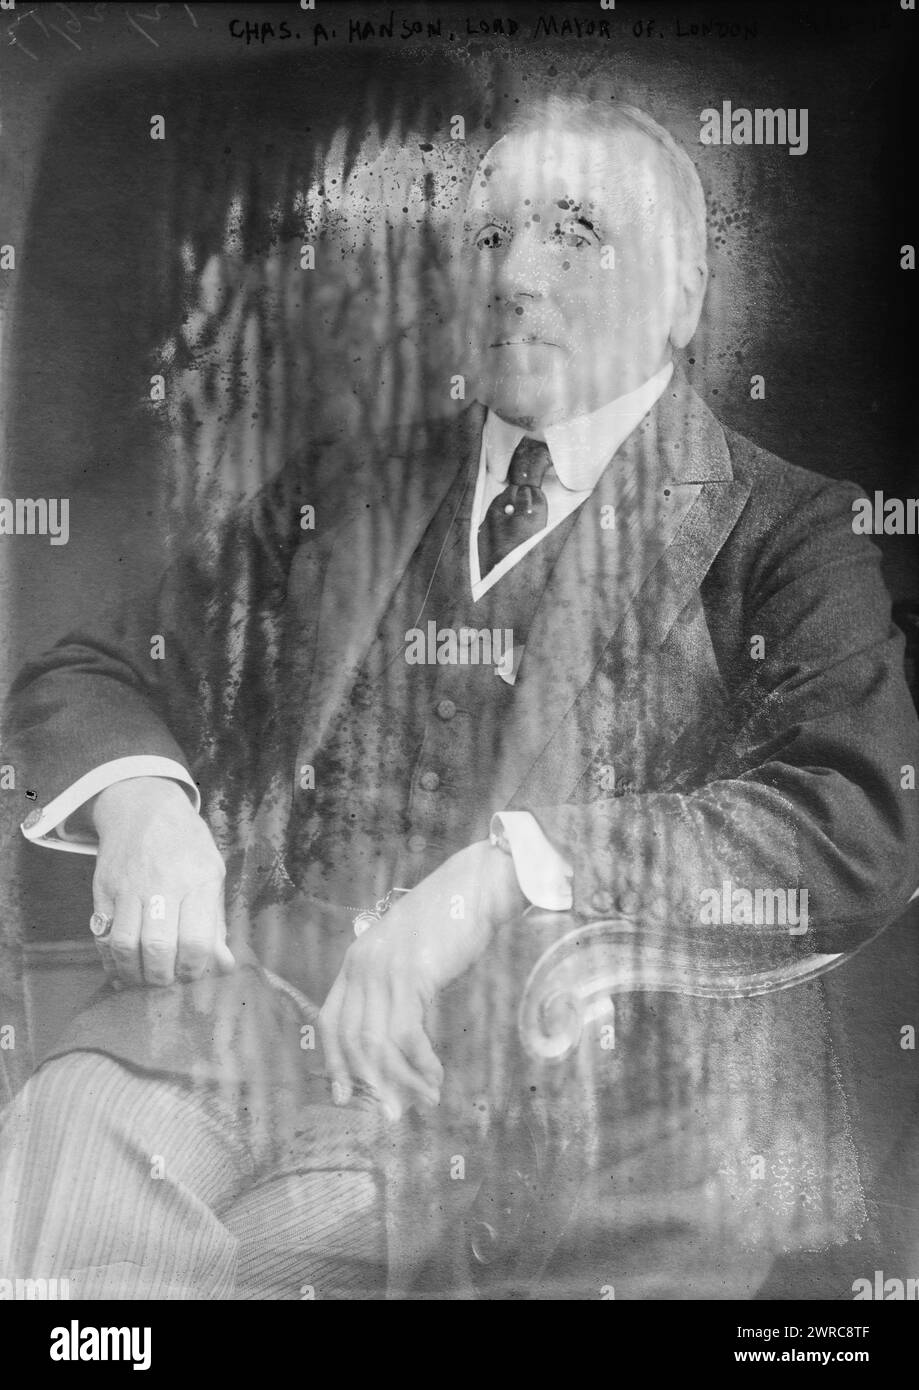 CAN. A. Hanson, Lord Mayor of London, la fotografia mostra il politico britannico Sir Charles Augustin Hanson (1846-1922), i baronetto di Fowey che servì come Lord Mayor di Londra nel 1917-1818., tra il 1818 e il 1818 circa. 1915 e ca. 1920, Glass negative, 1 negativo: Glass Foto Stock